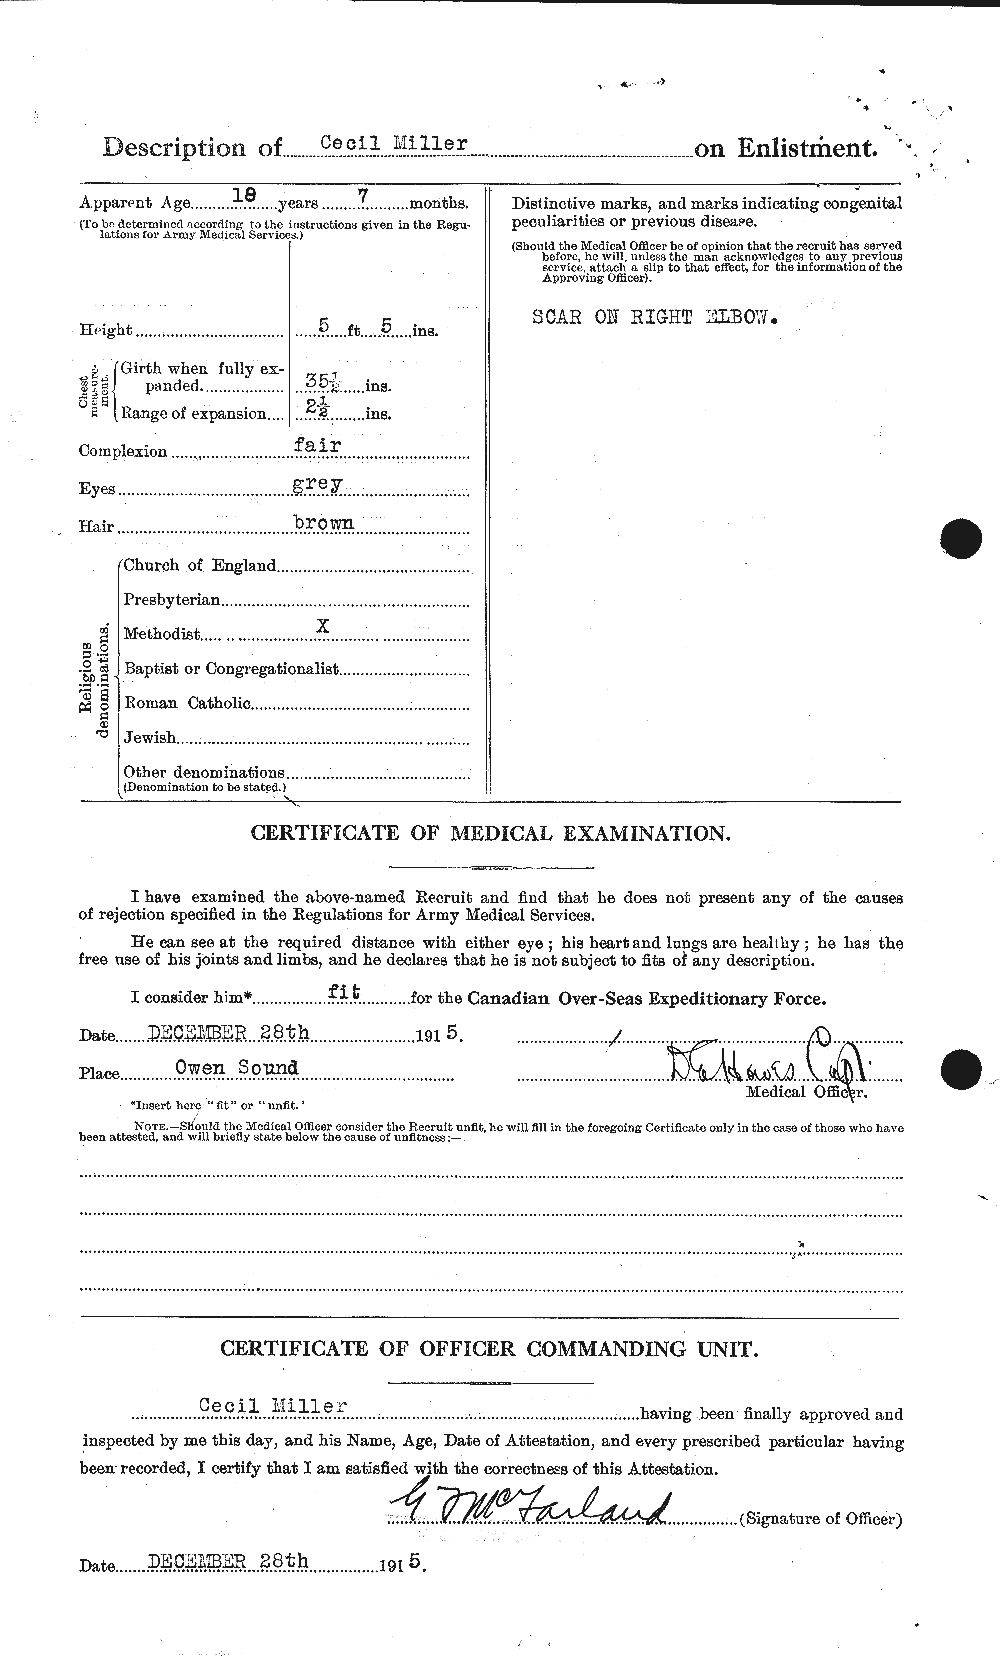 Dossiers du Personnel de la Première Guerre mondiale - CEC 498768b